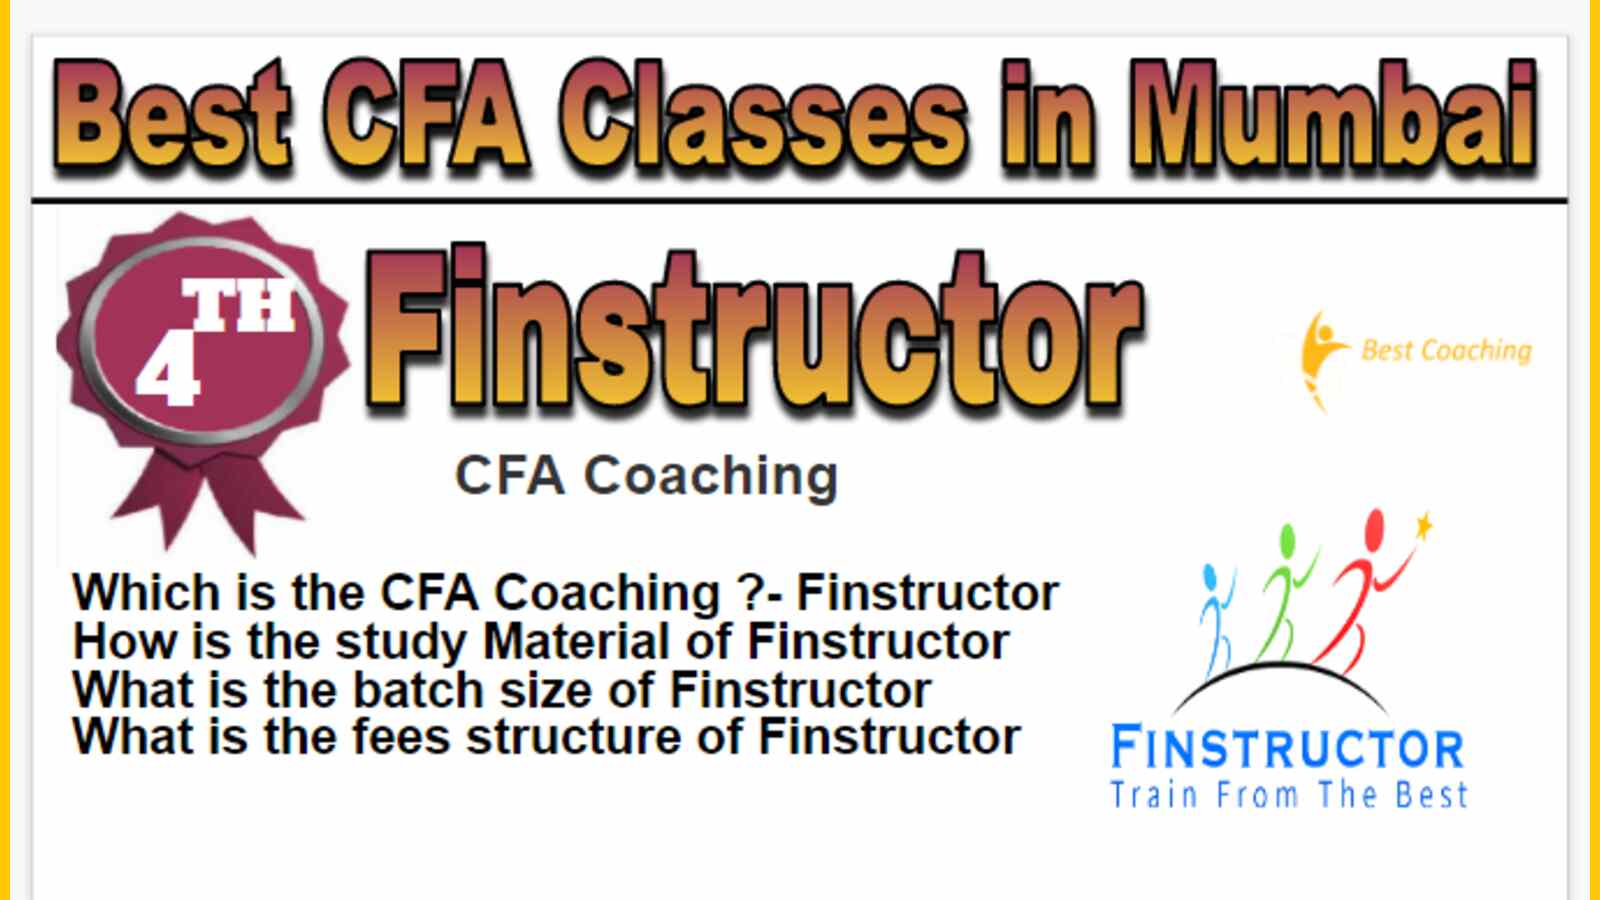 Rank 4 Best CFA Classes in Mumbai